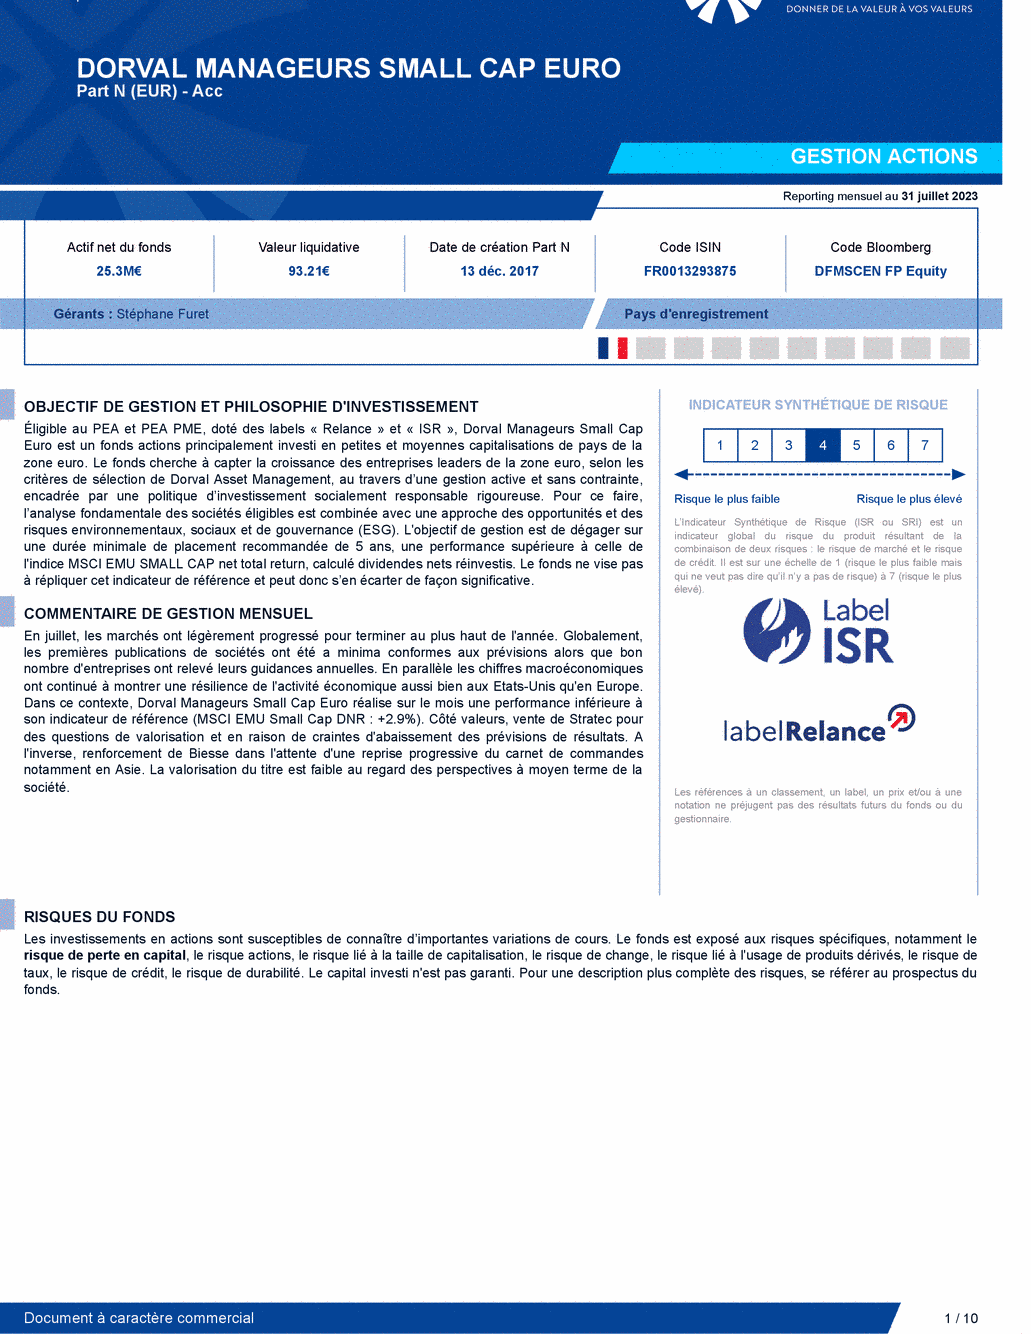 Reporting DORVAL MANAGEURS SMALL CAP EURO N - 31/07/2023 - Français